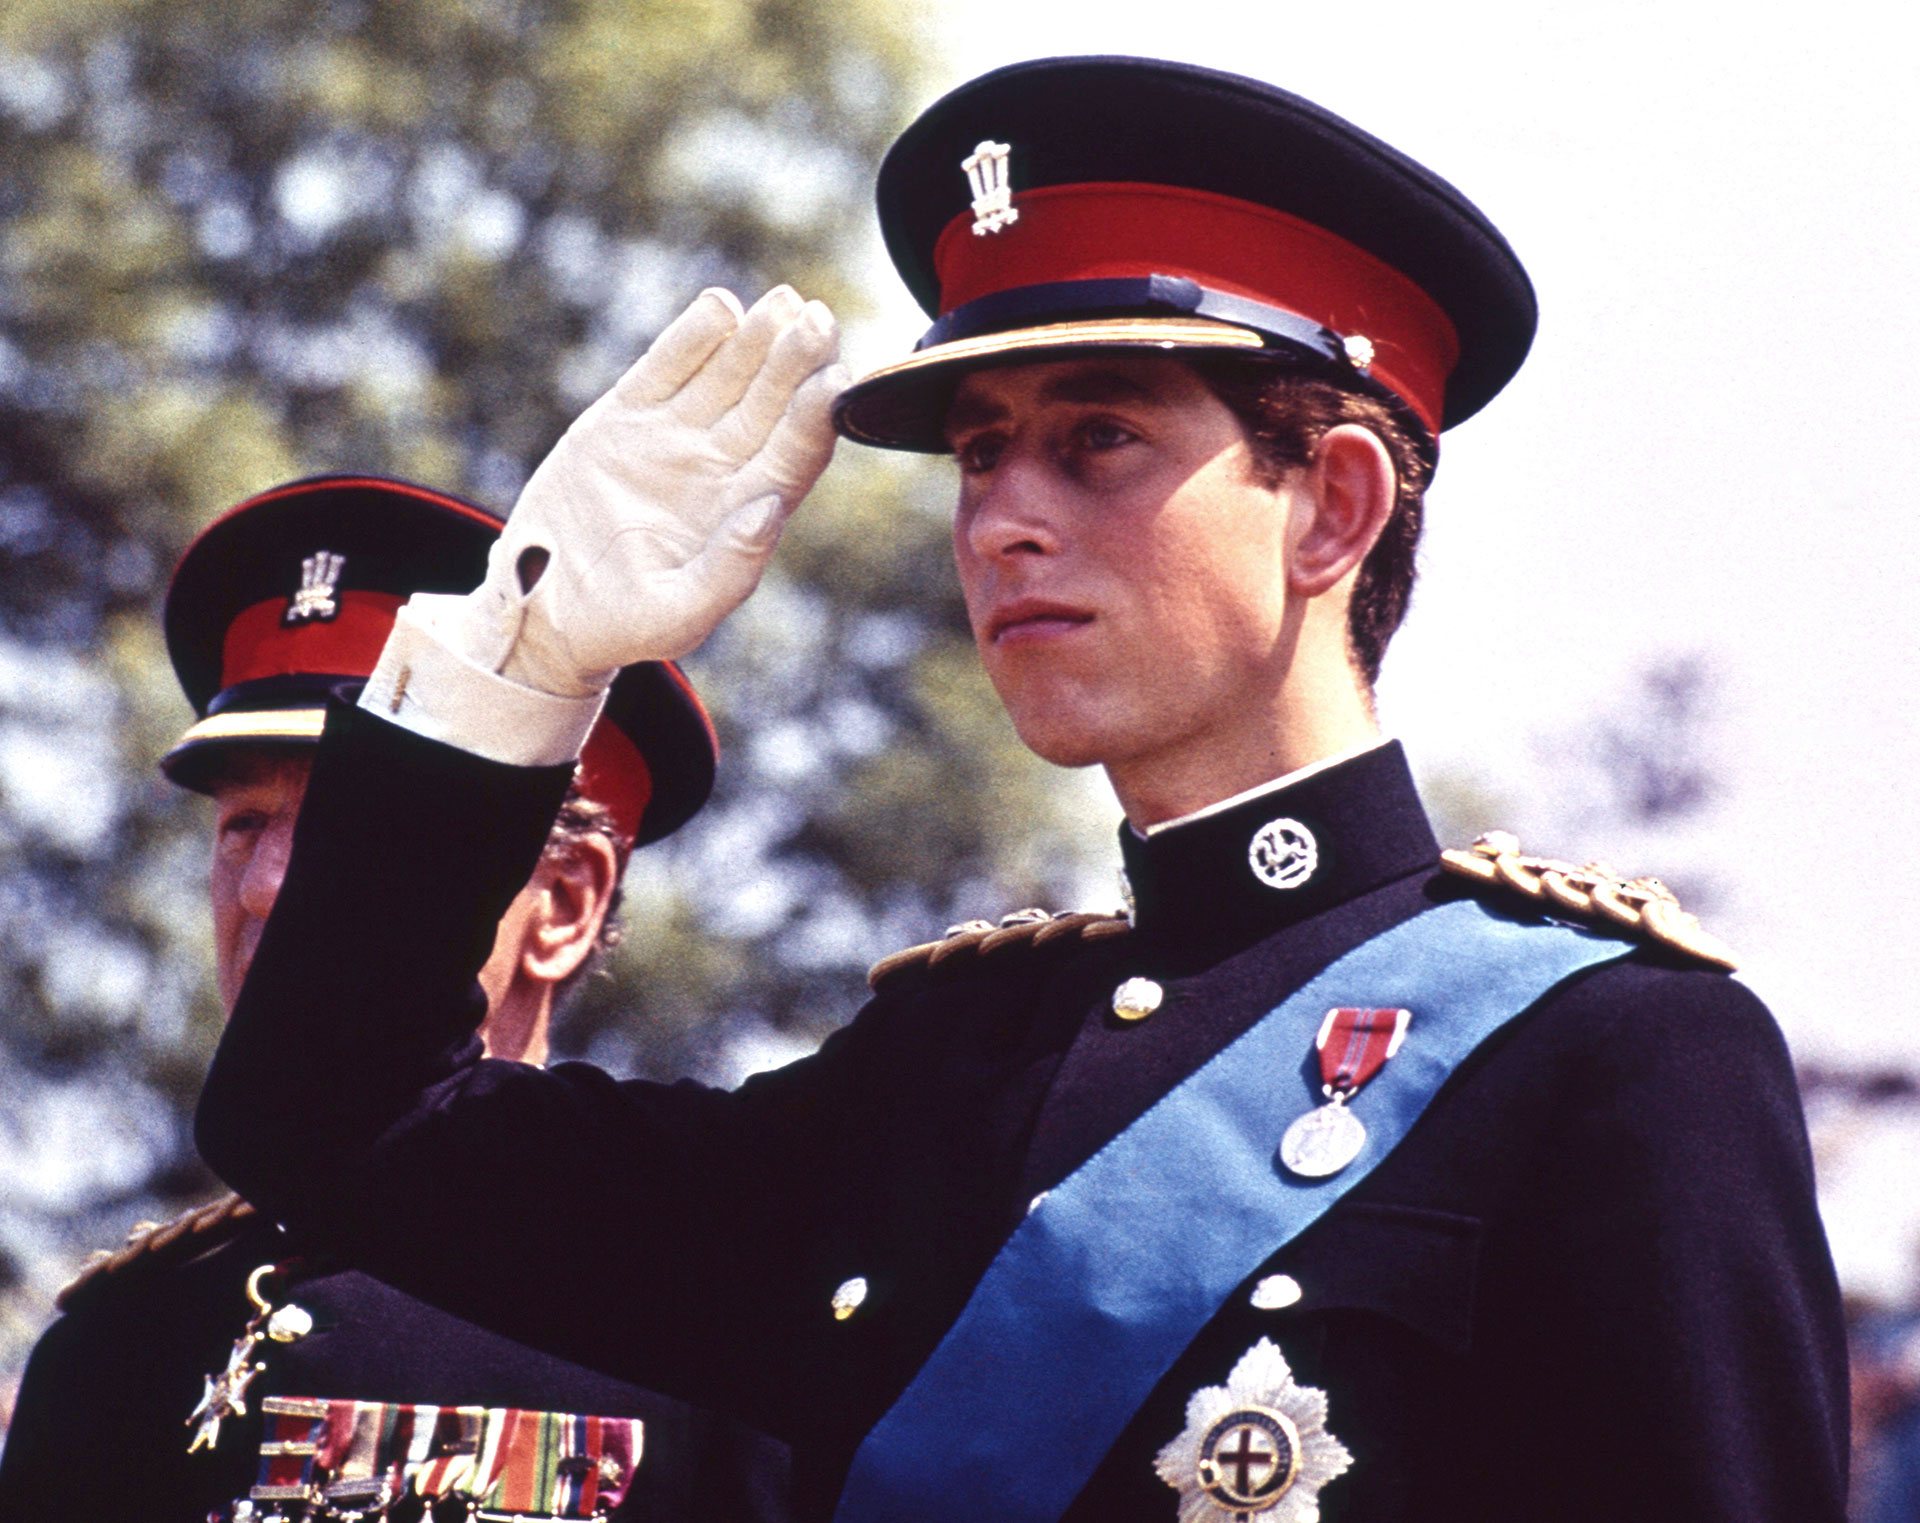 Foto tomada el 11 de junio de 1969, cuando el Príncipe Carlos, vestido con el uniforme de Coronel en Jefe del Regimiento Real de Gales, saluda en la presentación de Color del Regimiento, en el Castillo de Cardiff en Gales. Fue la primera ocasión en que el Príncipe llevó este uniforme. (AP Photo, File)